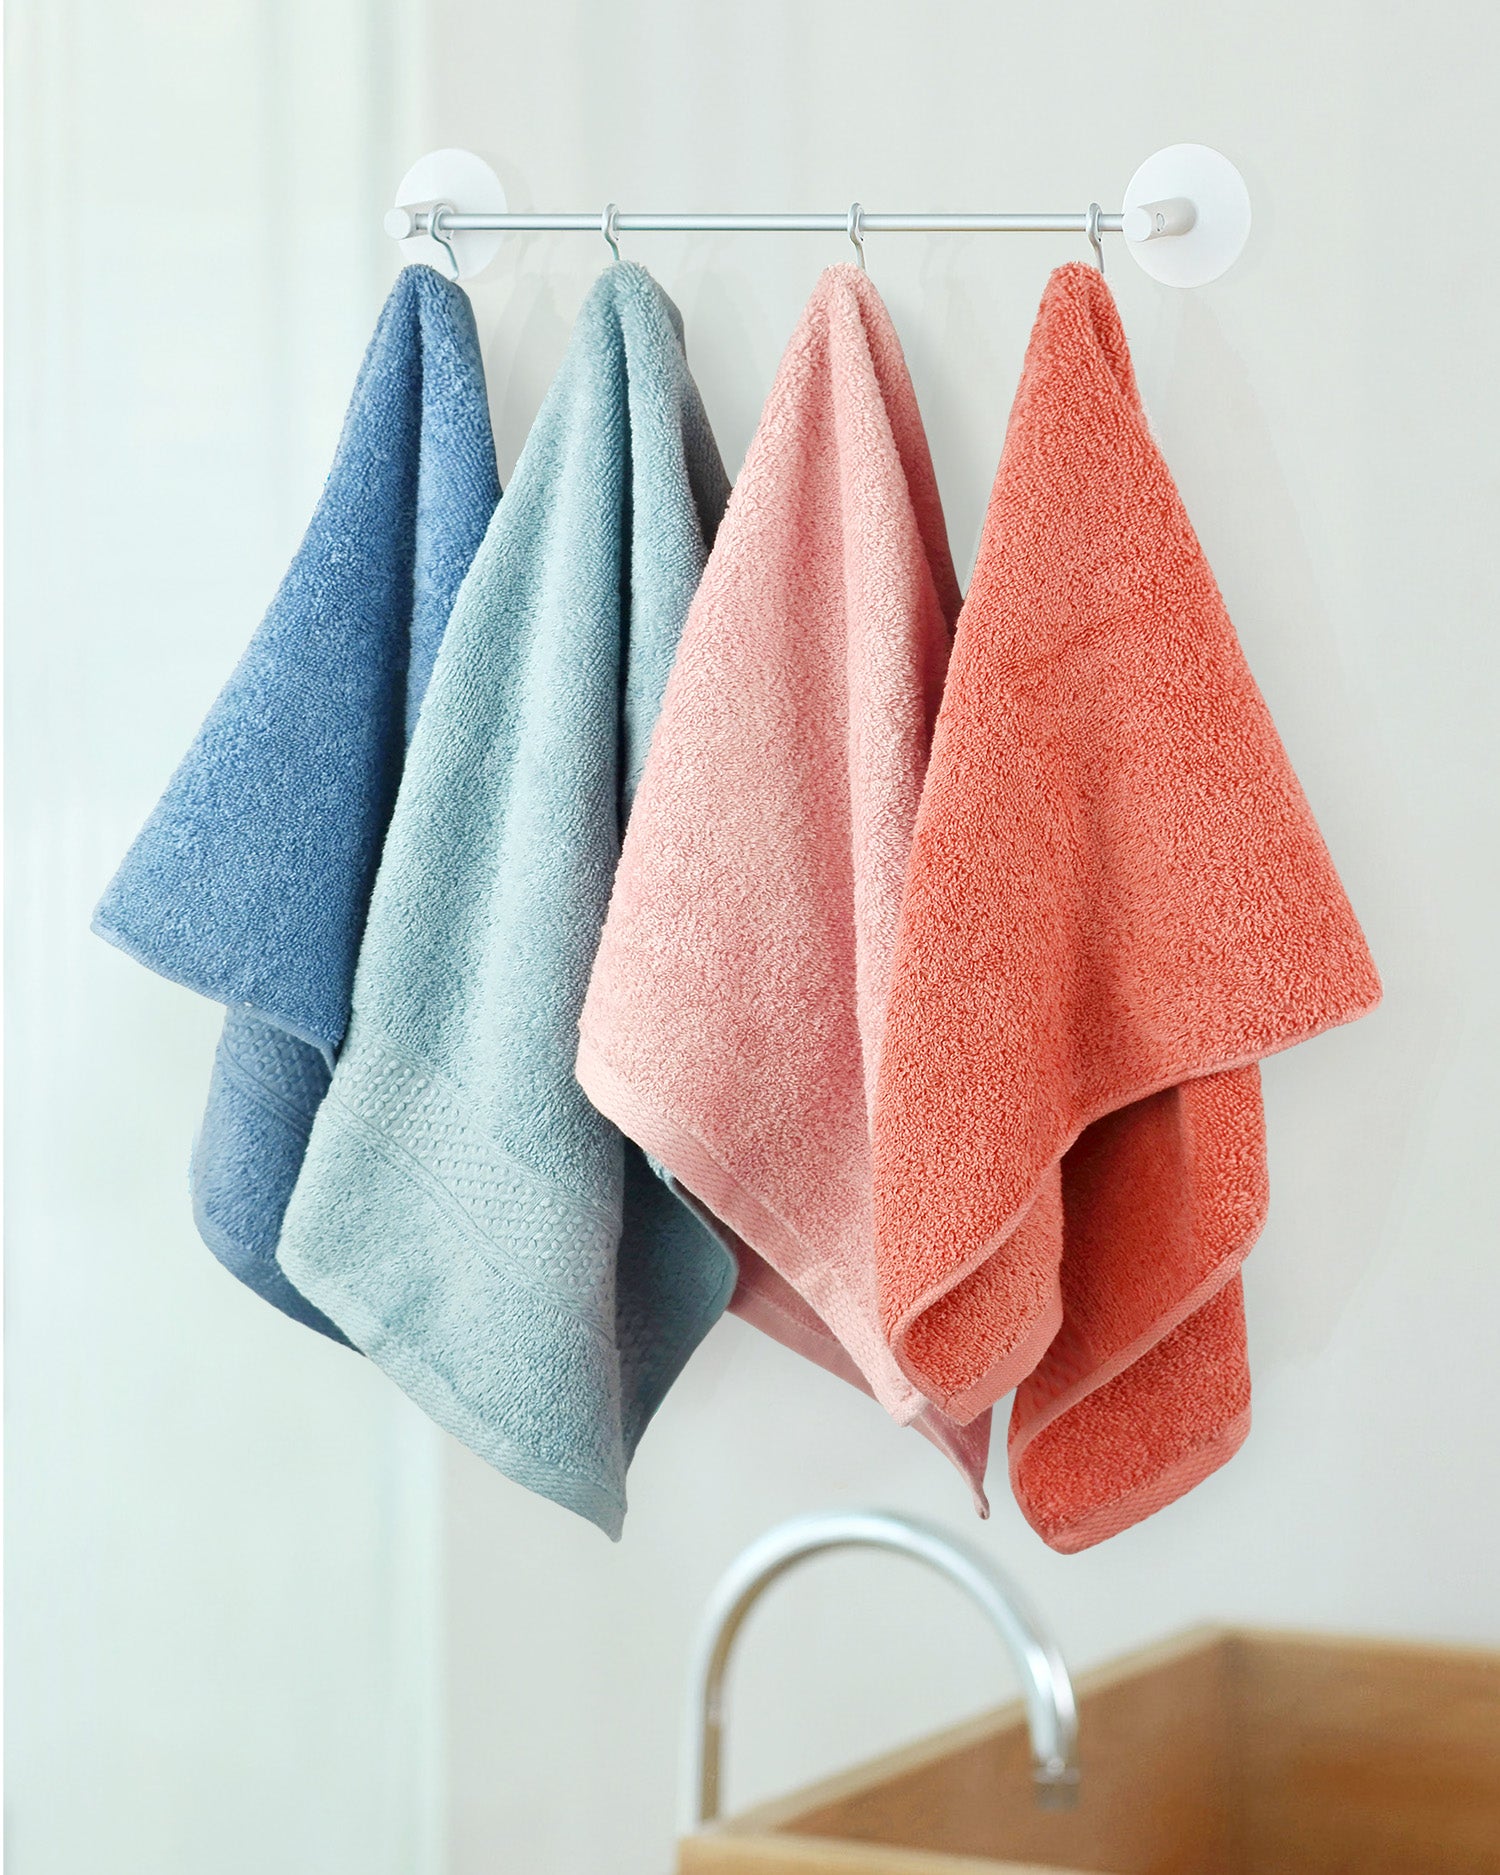 Cute Cotton Hand Towels Wholesale MOQ 12